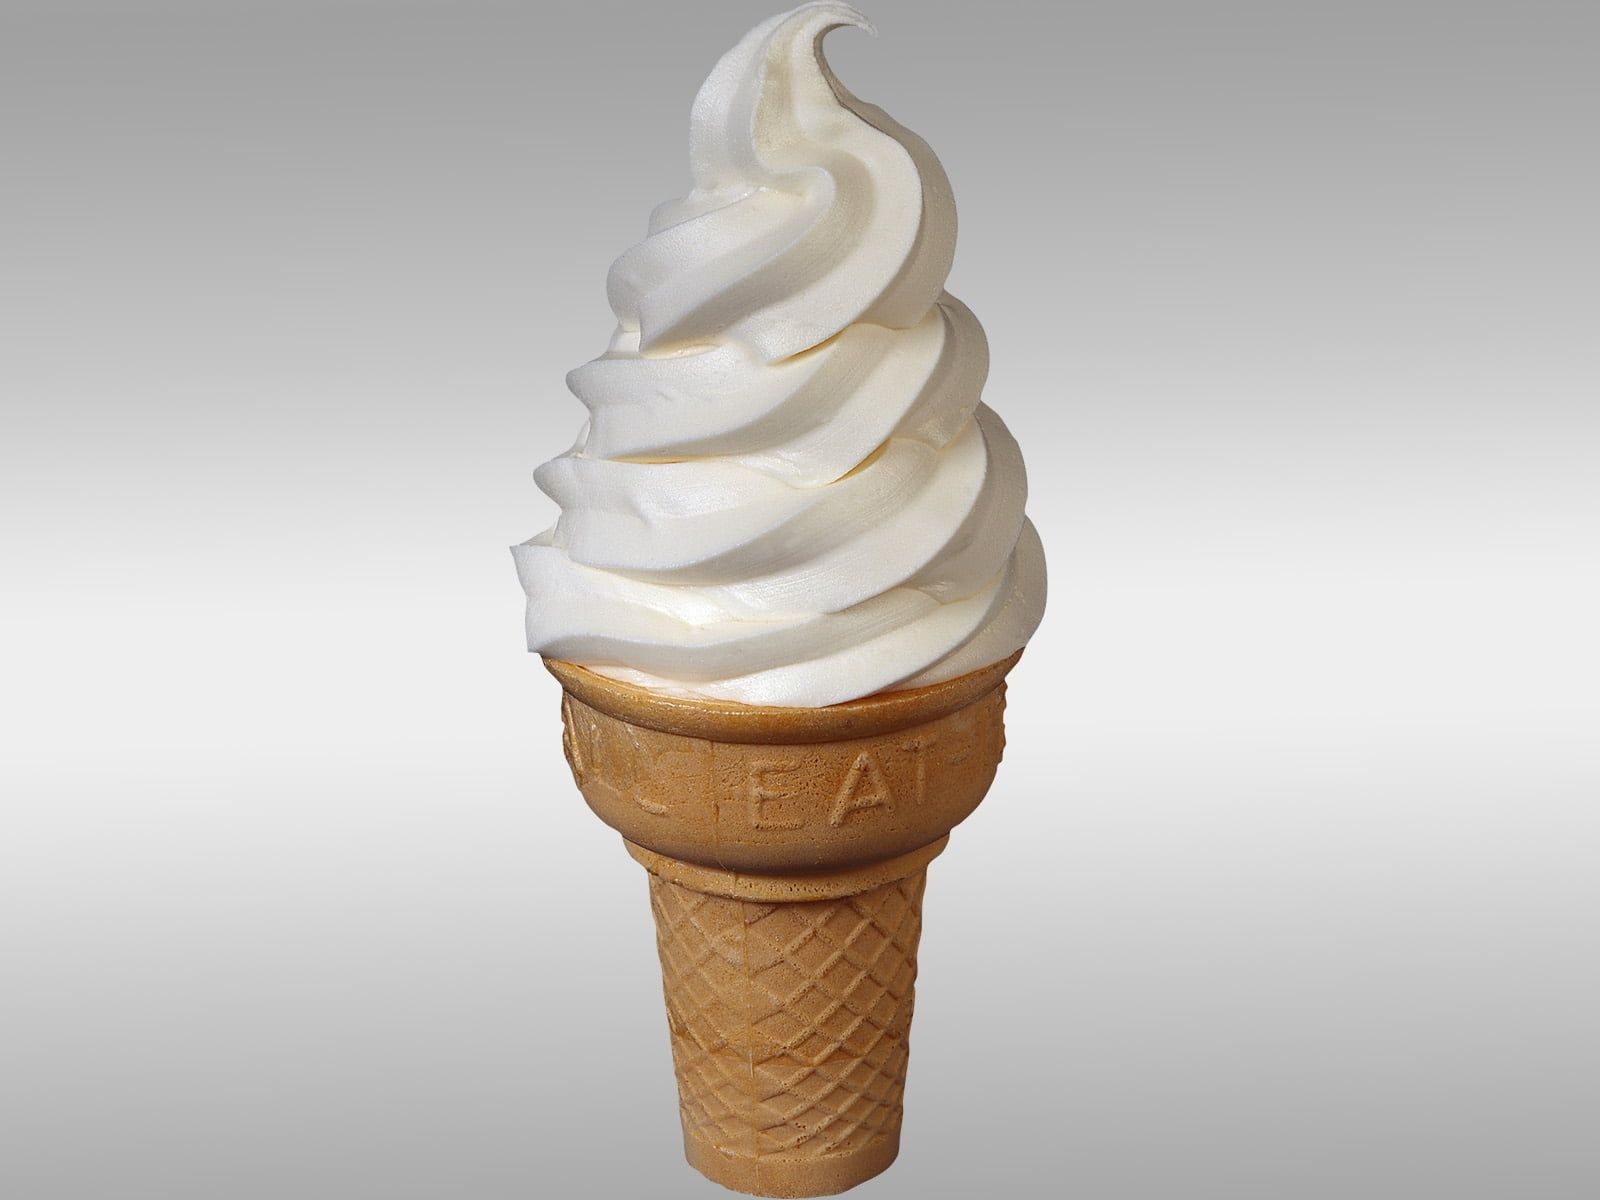 Vanilla Ice Cream Swirl